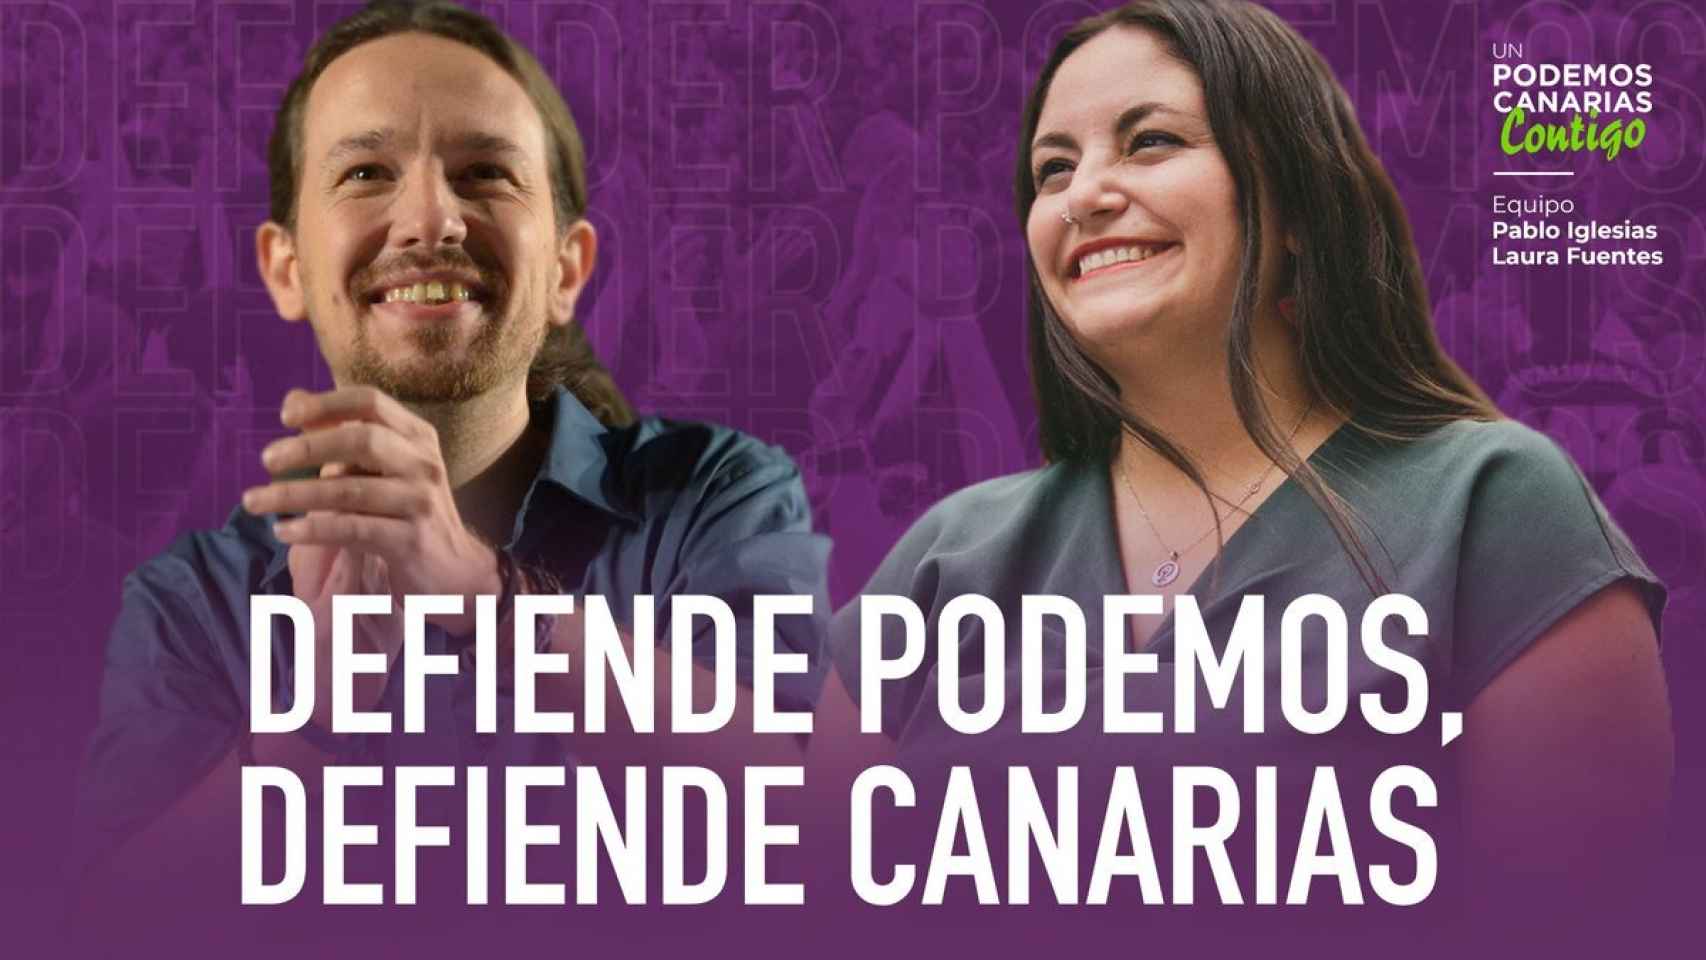 Cartel electoral de Laura Fuentes, junto a Pablo Iglesias, en las primarias de Podemos Canarias.